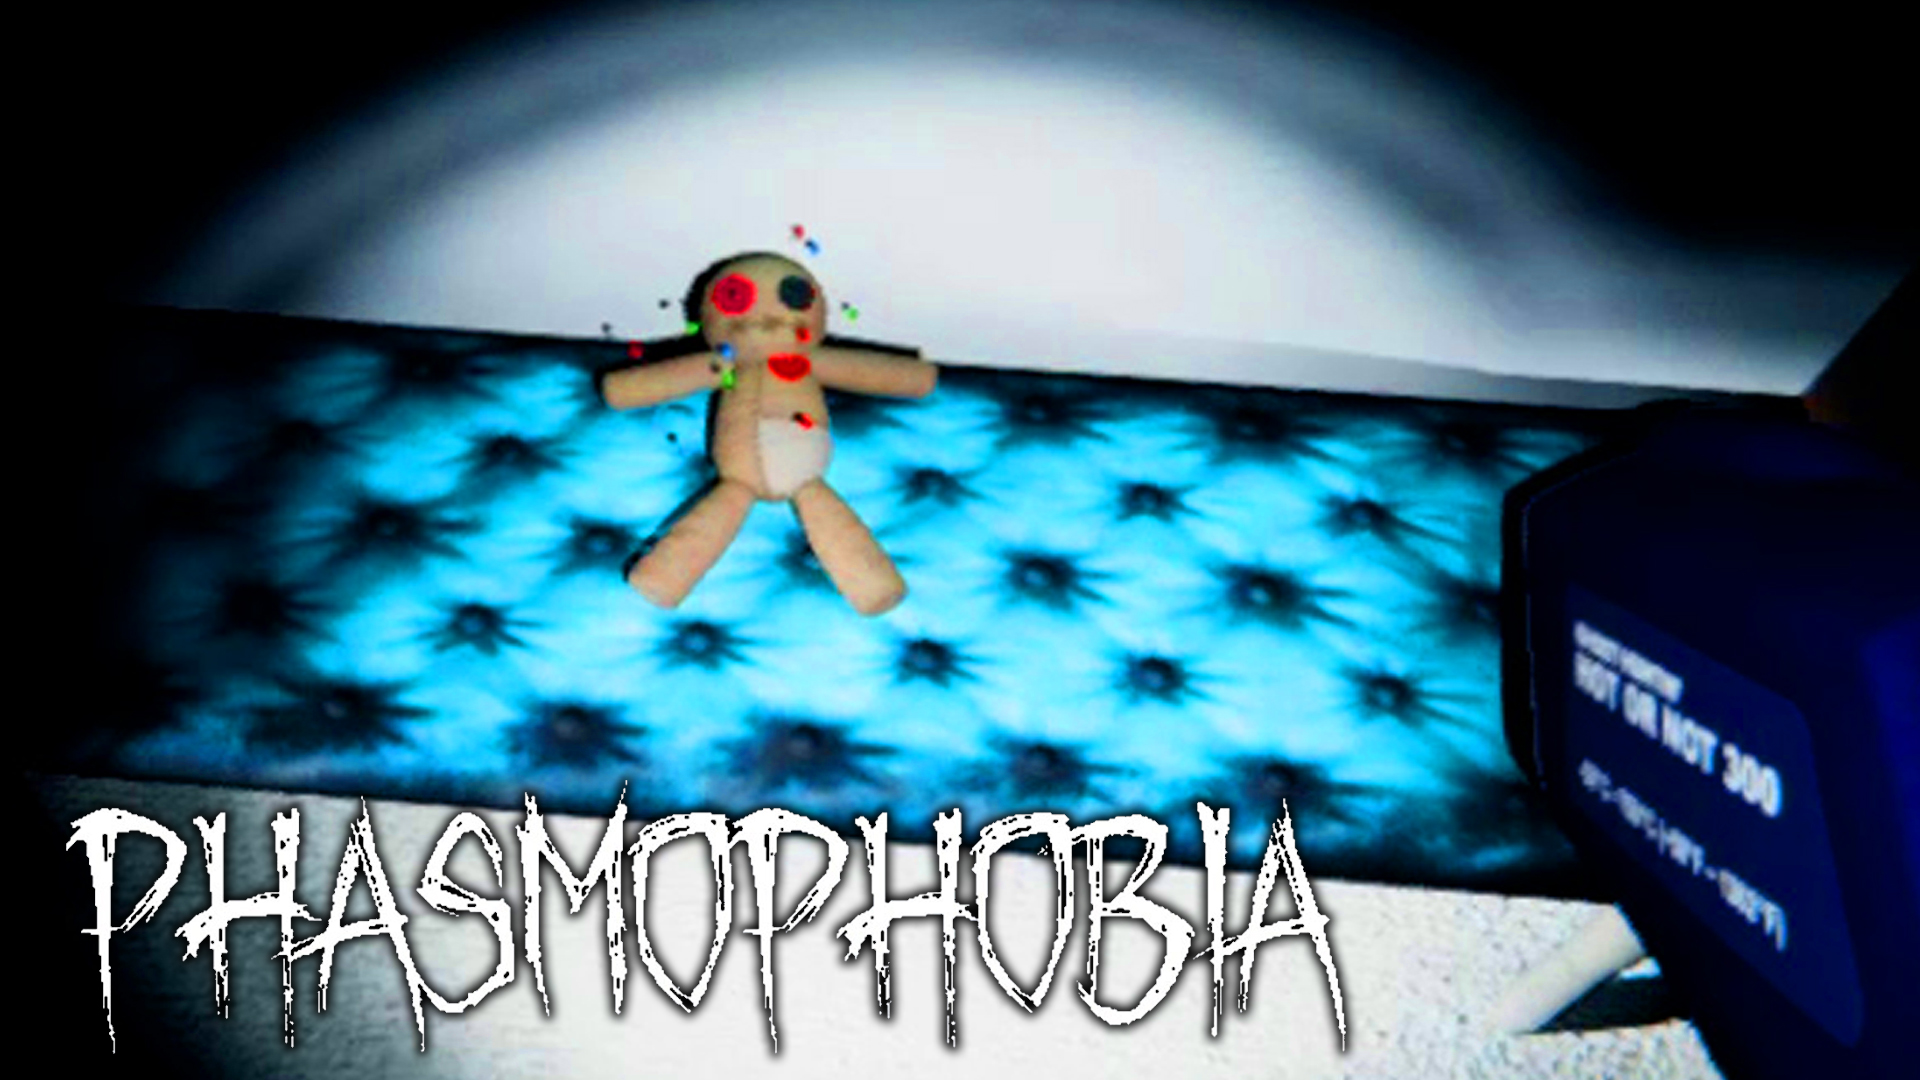 кукла вуду phasmophobia как фото 11